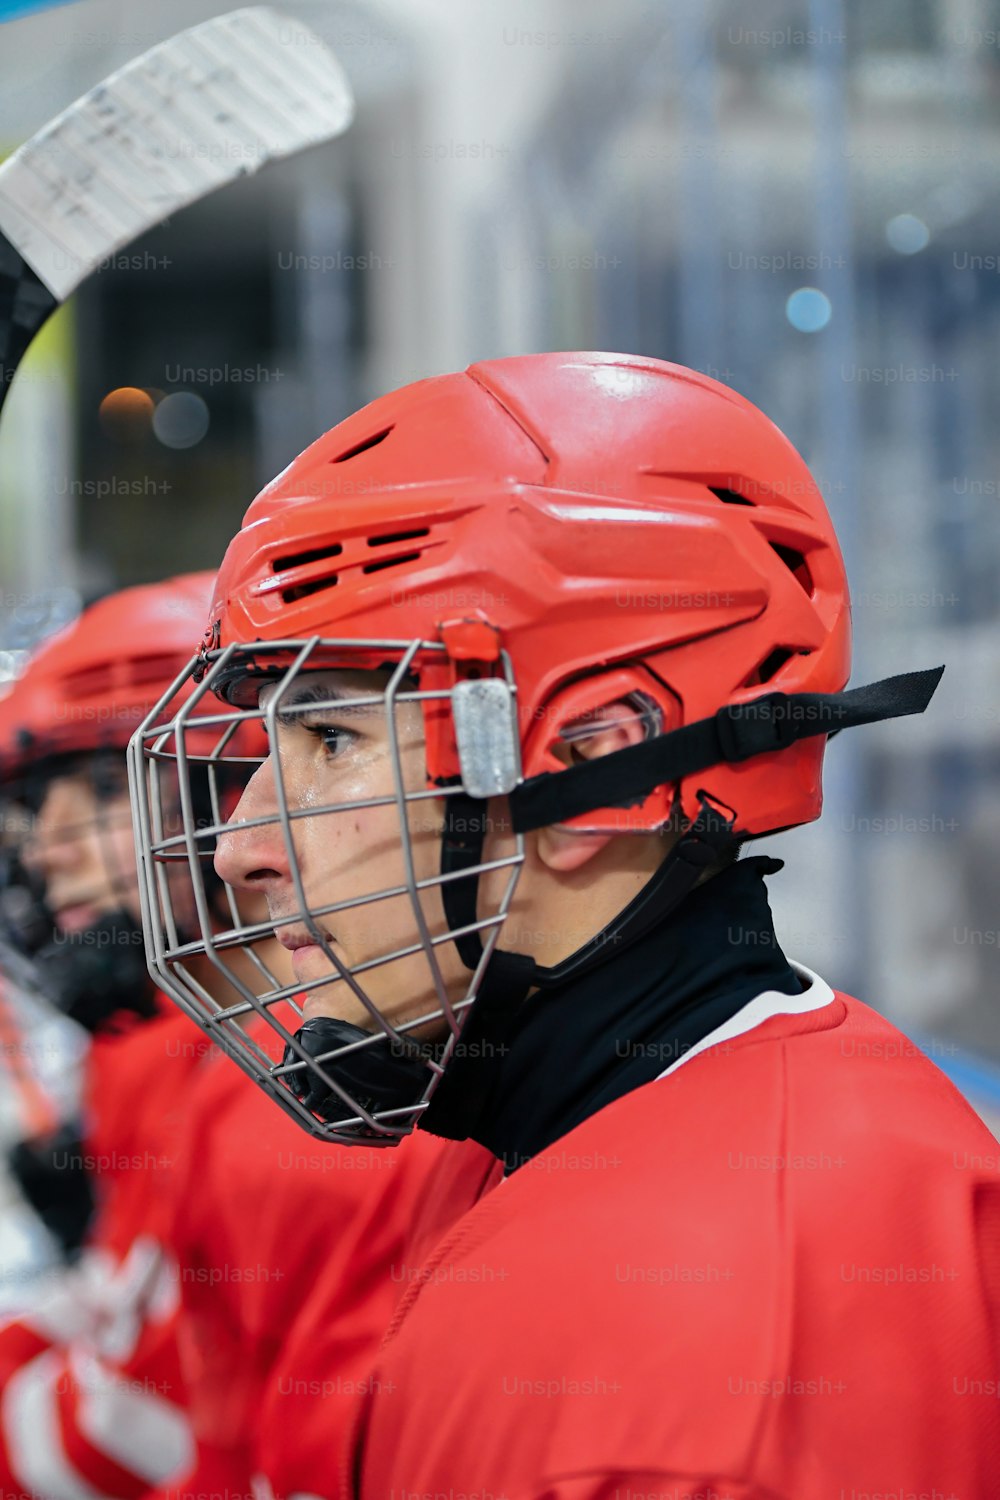 ein Hockeyspieler, der einen roten Helm trägt und einen Hockeyschläger hält